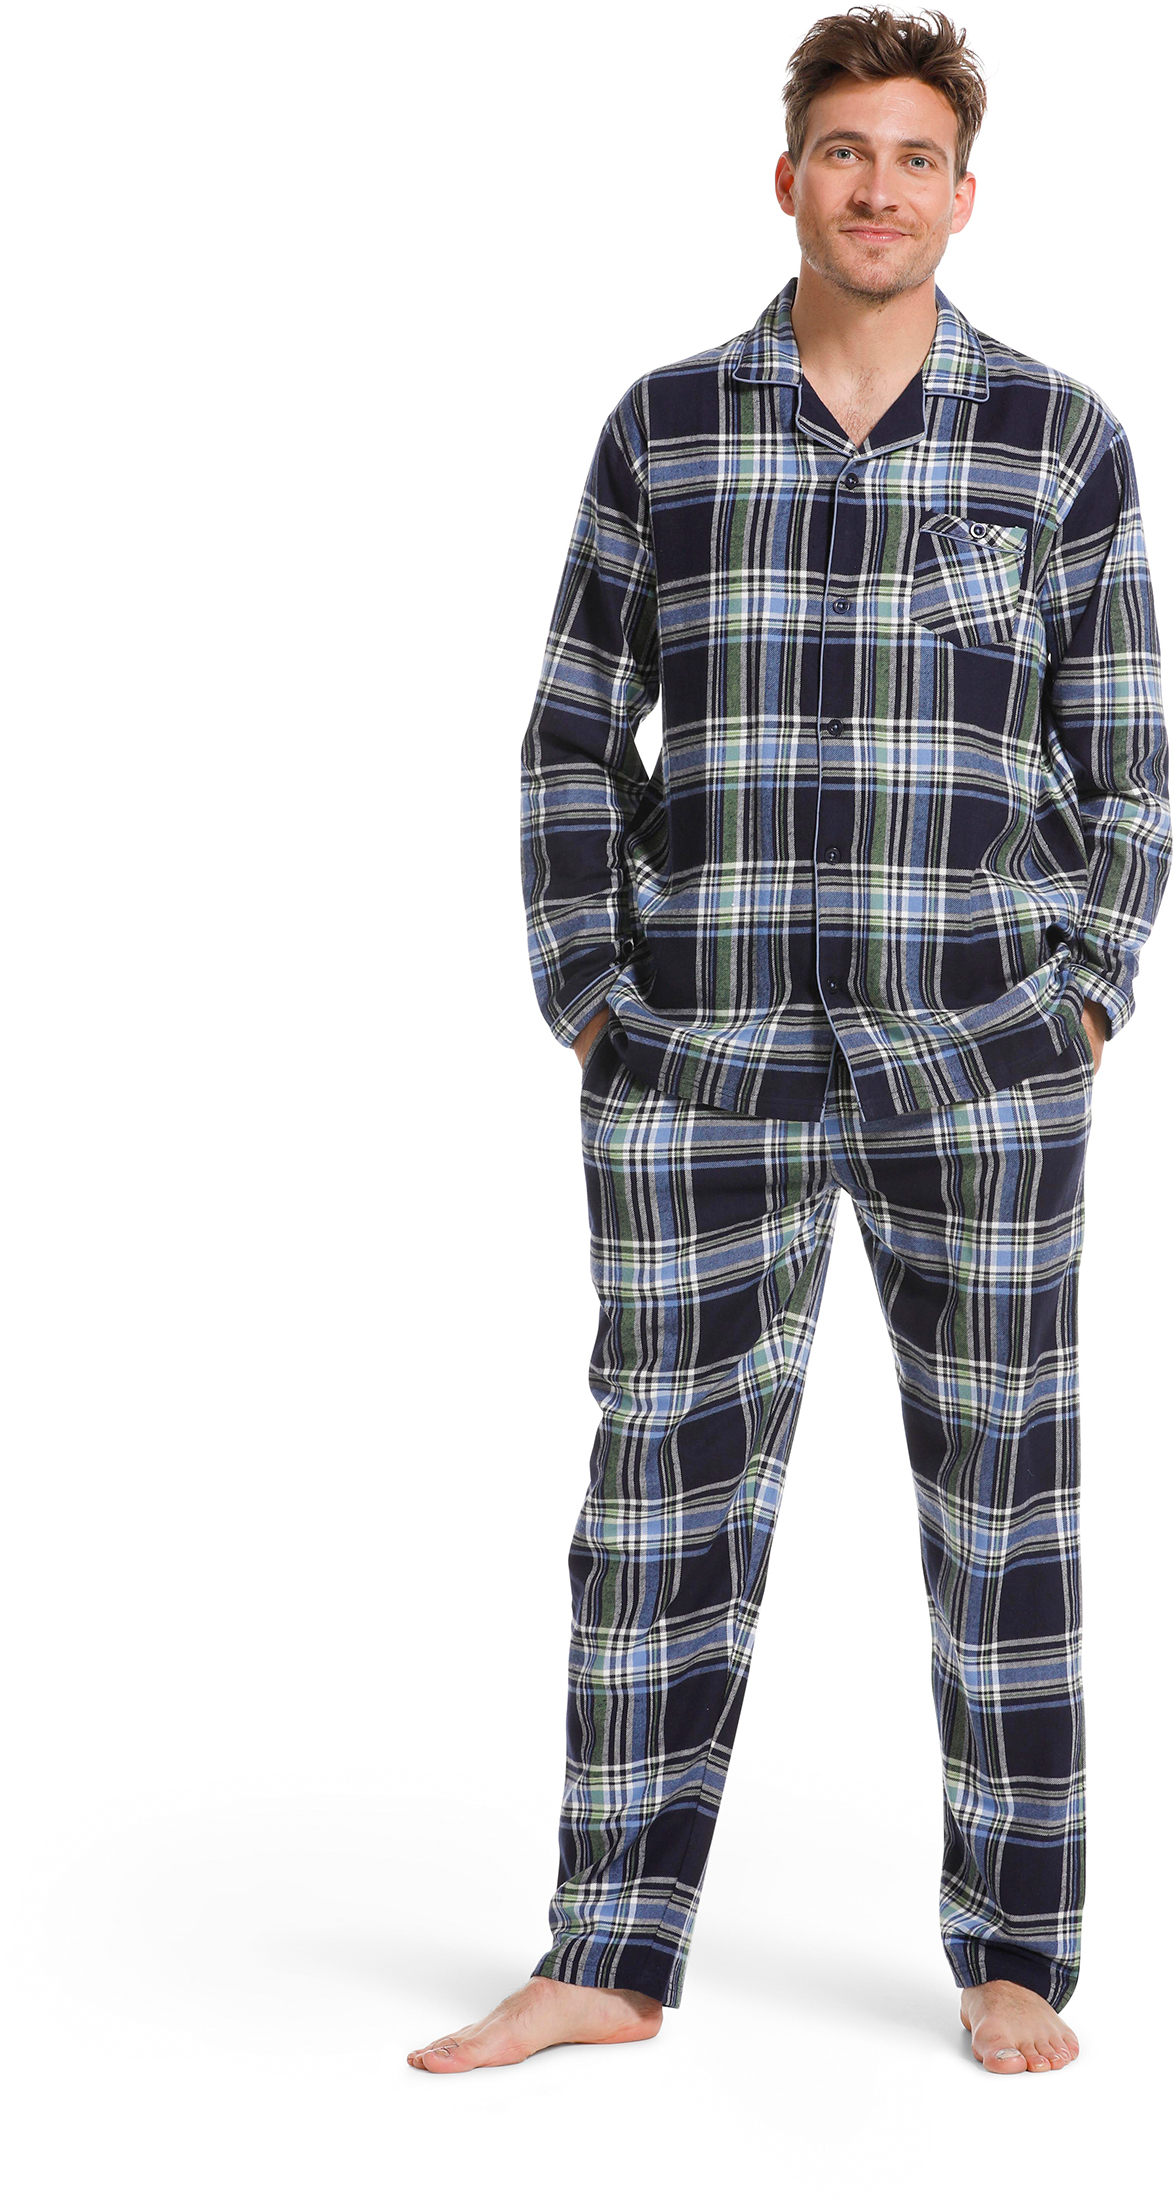 Pastunette heren pyjama flanel 23222-620-6 - Blauw - M/50